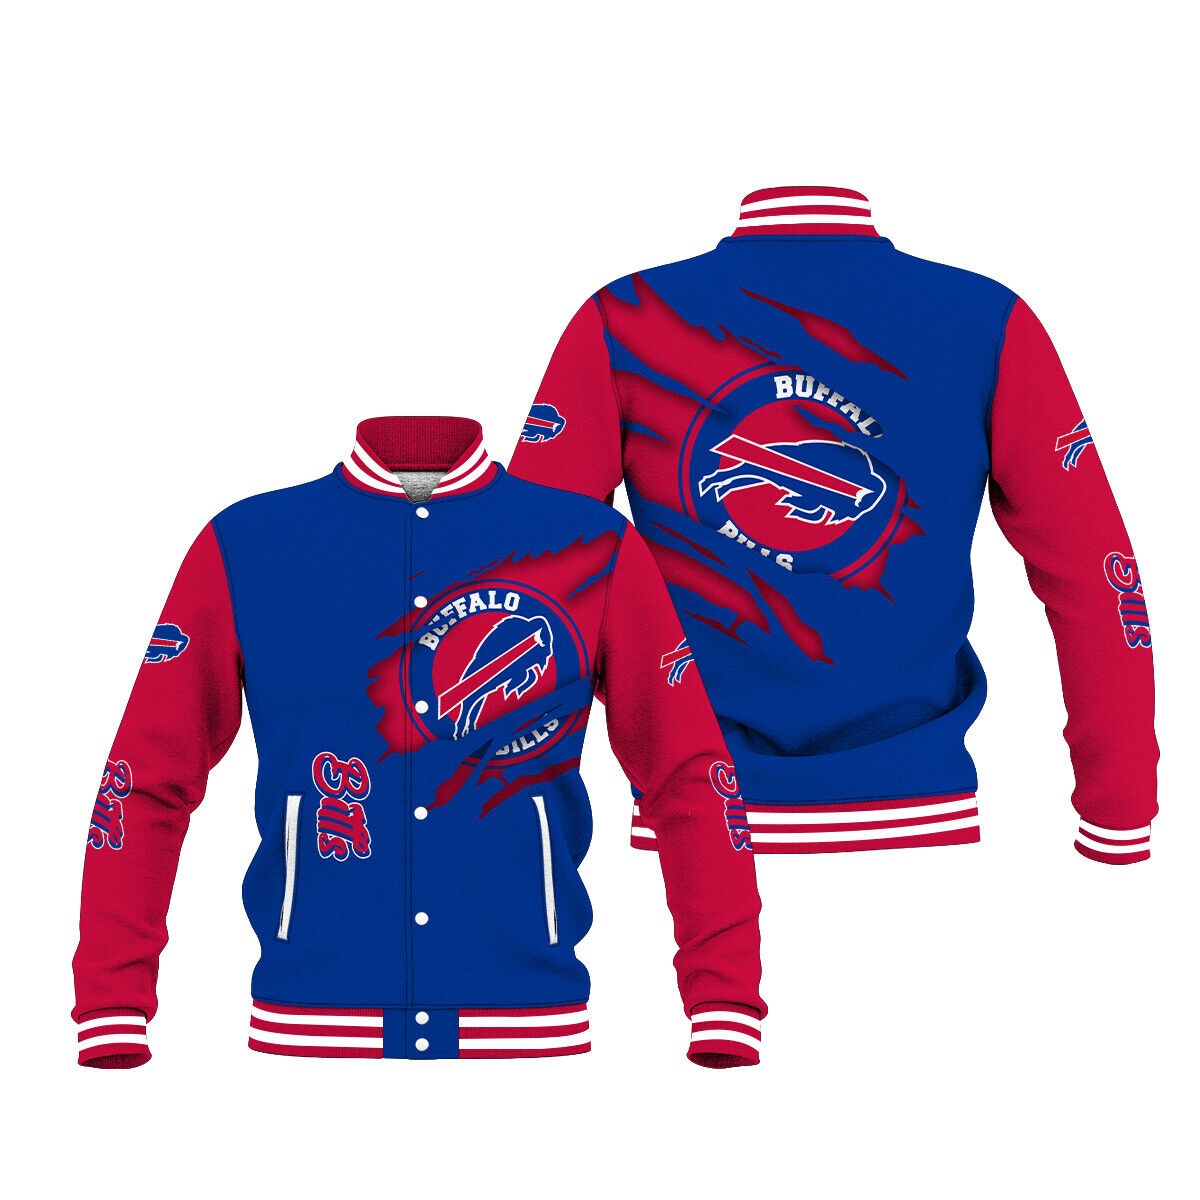 Buffalo Bills Varsity Jacket cute gift for fans -Jack sport shop